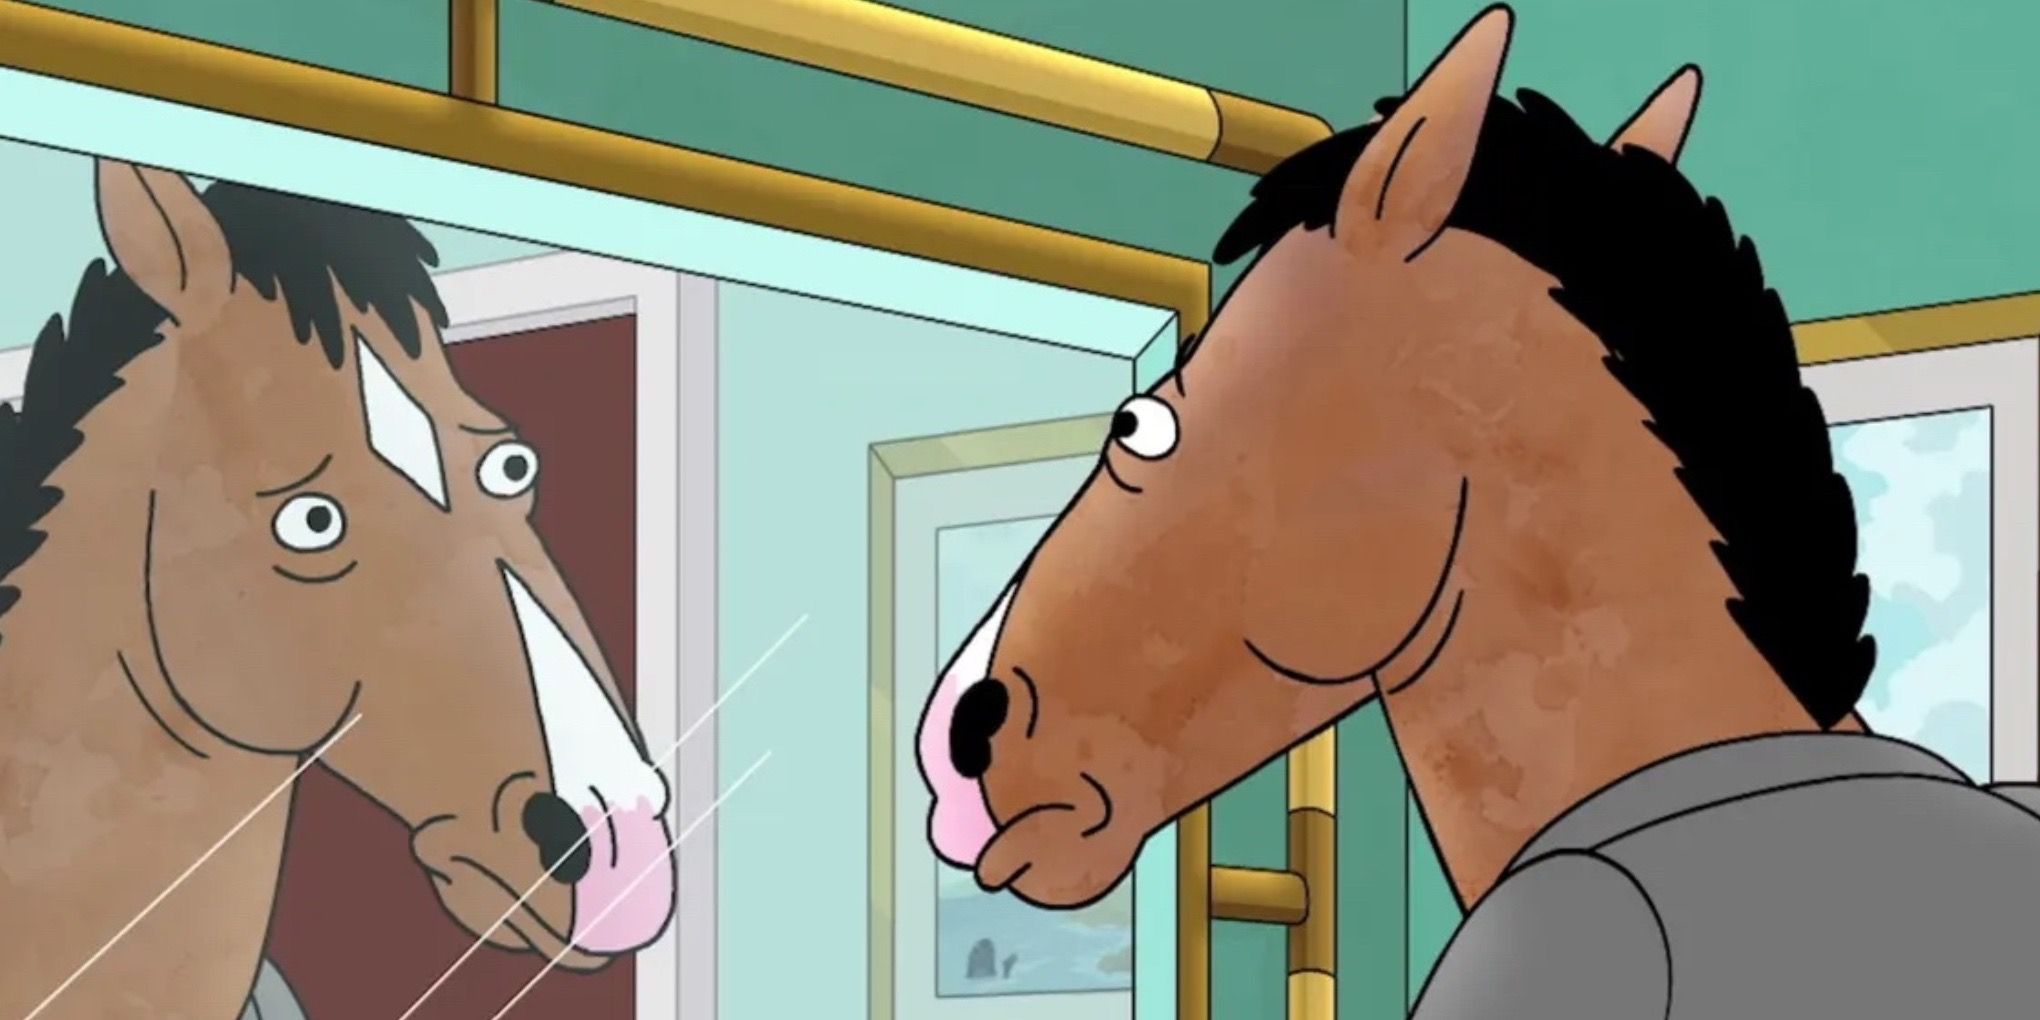 Will Arnett as Bojack Horseman on Bojack Horseman (2014-2020)